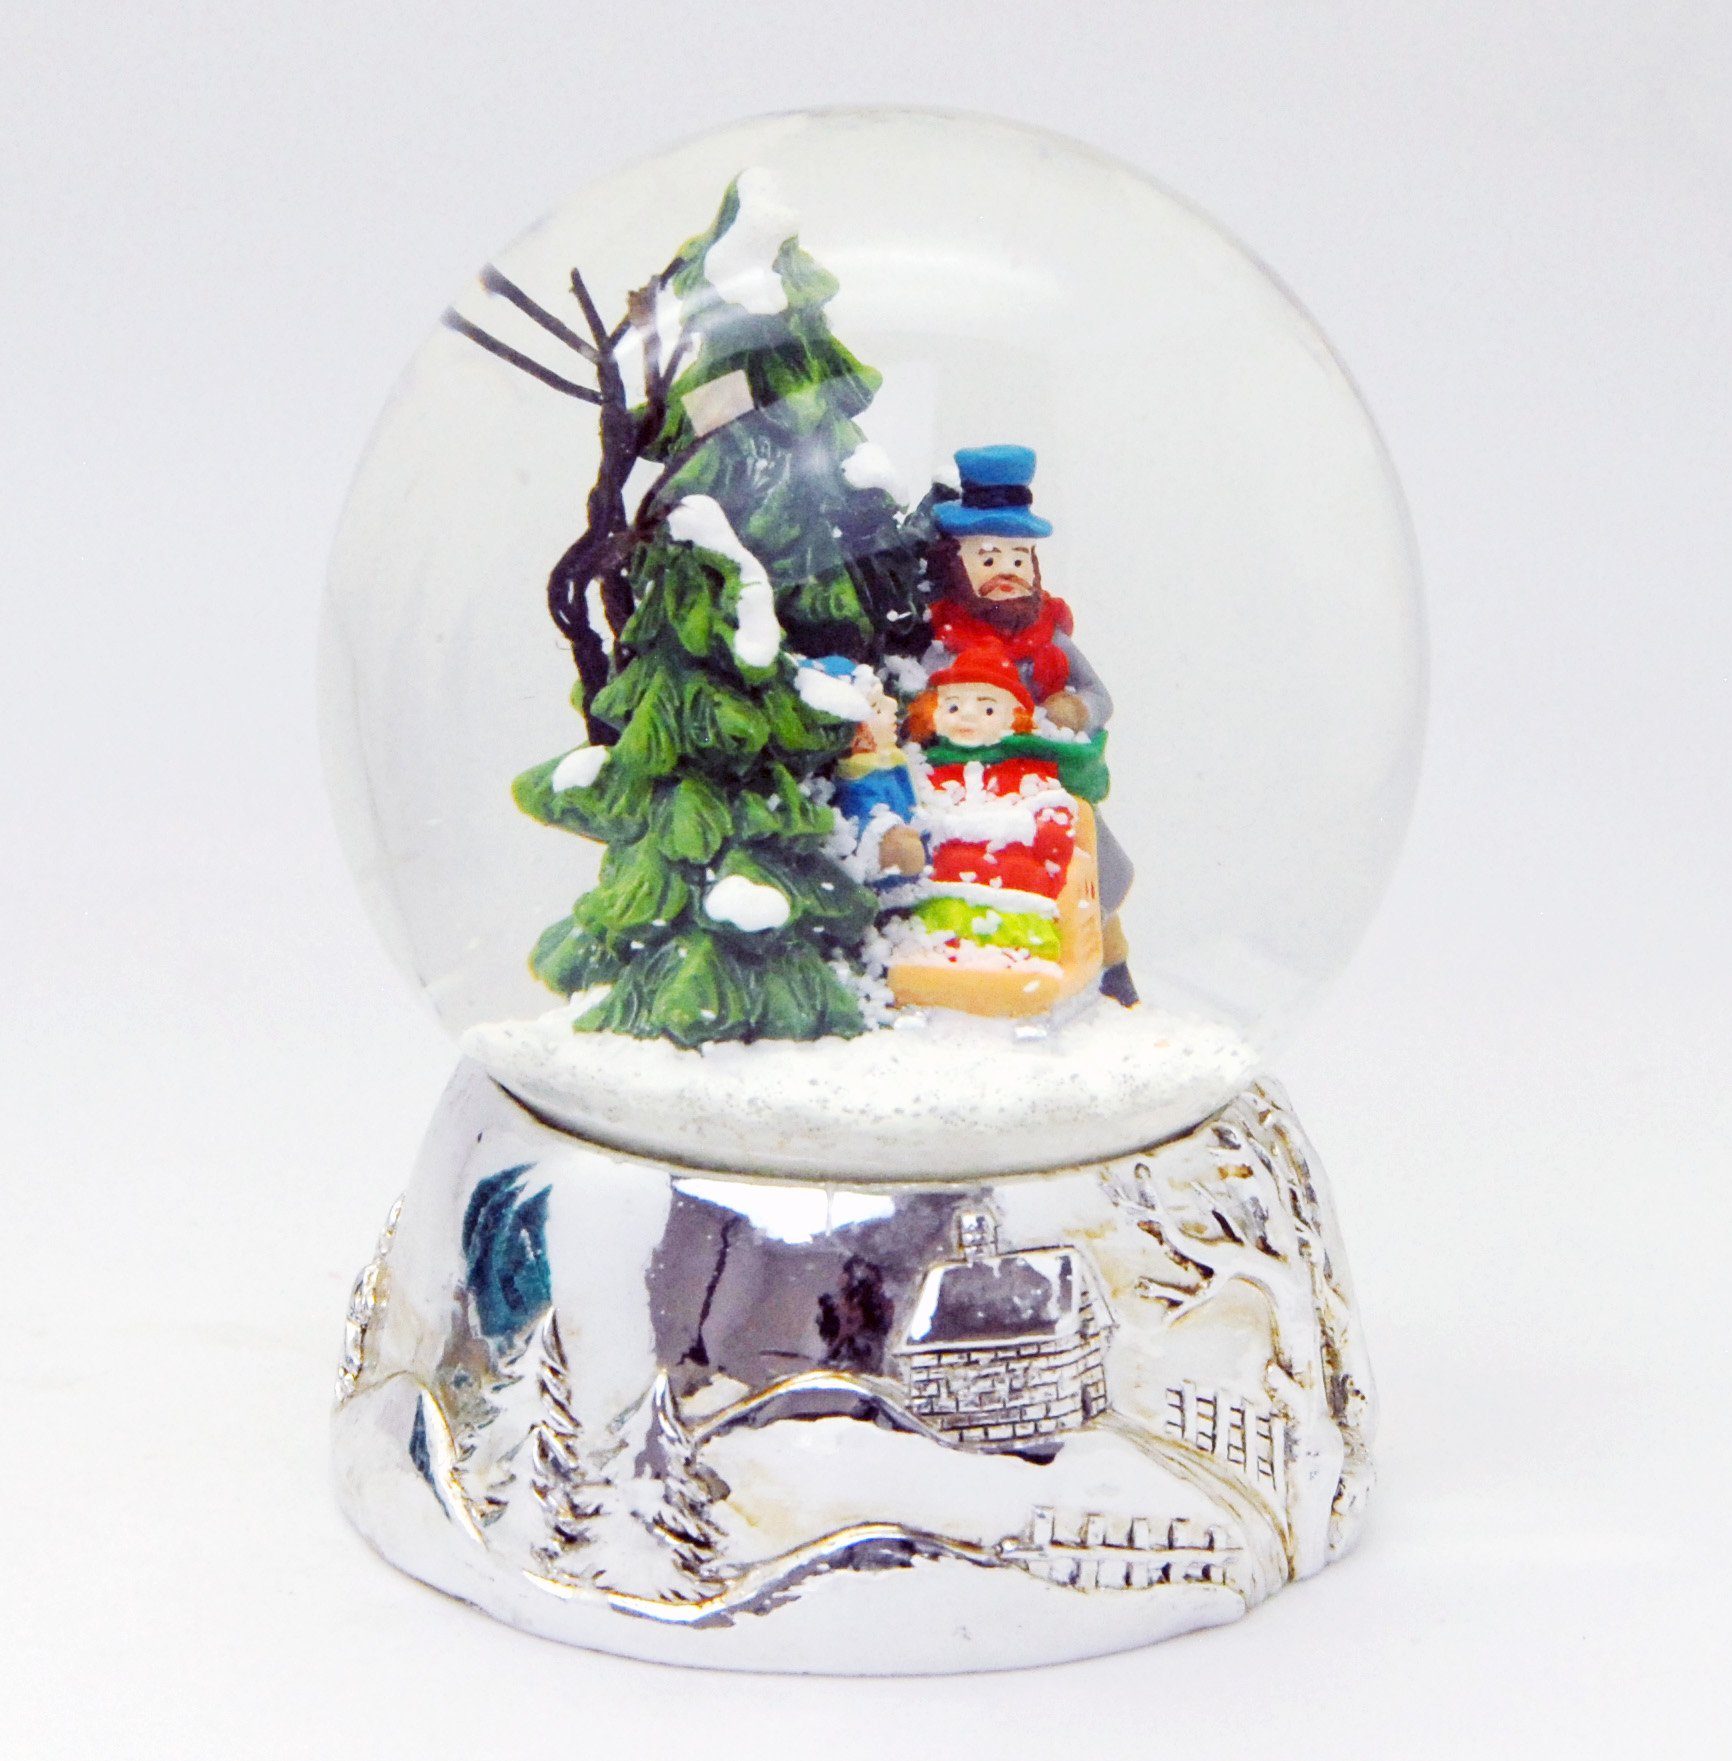 MINIUM-Collection Schneekugel Familienspaziergang Landschaft Sockel cm mit Silber Spieluhr 10